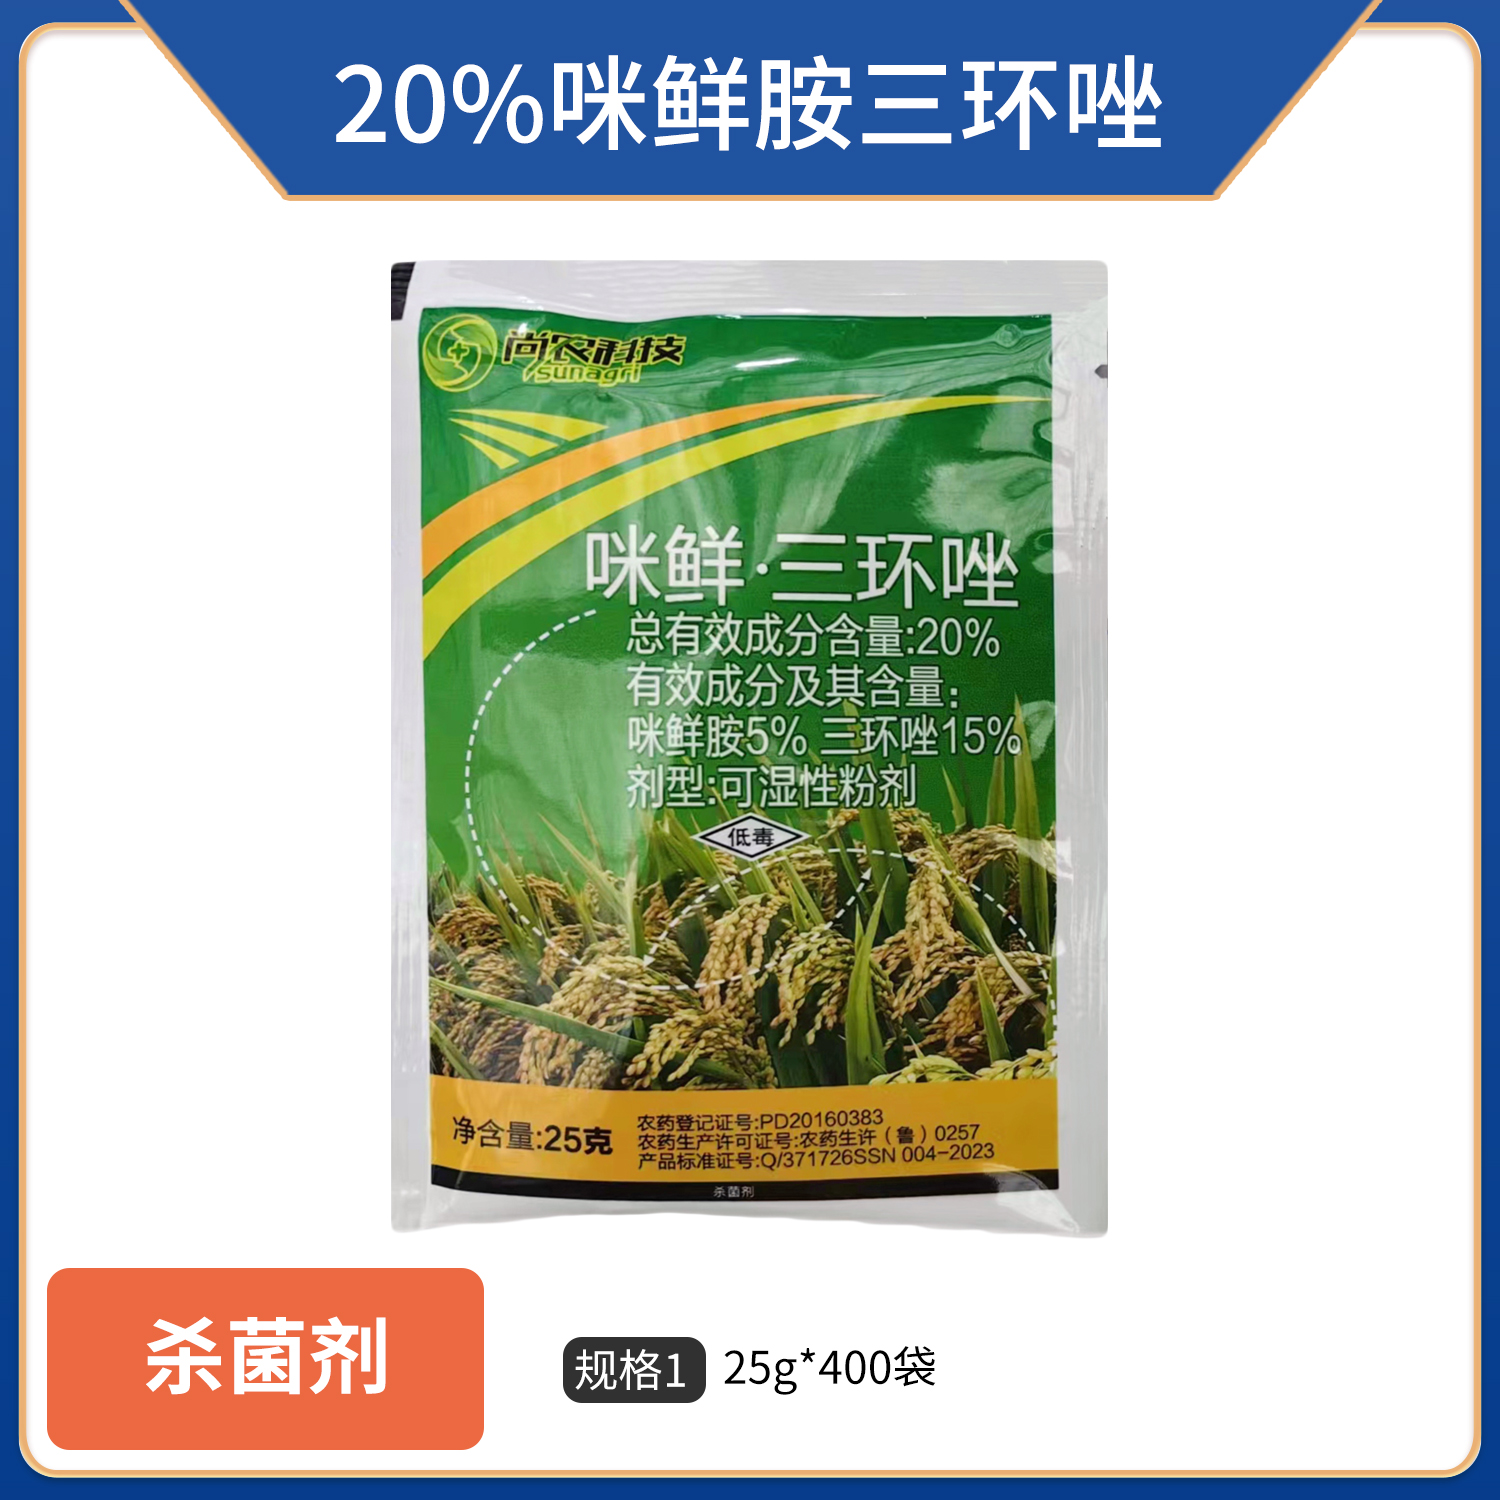 稻滋源-20%咪鲜·三环唑可湿性粉剂